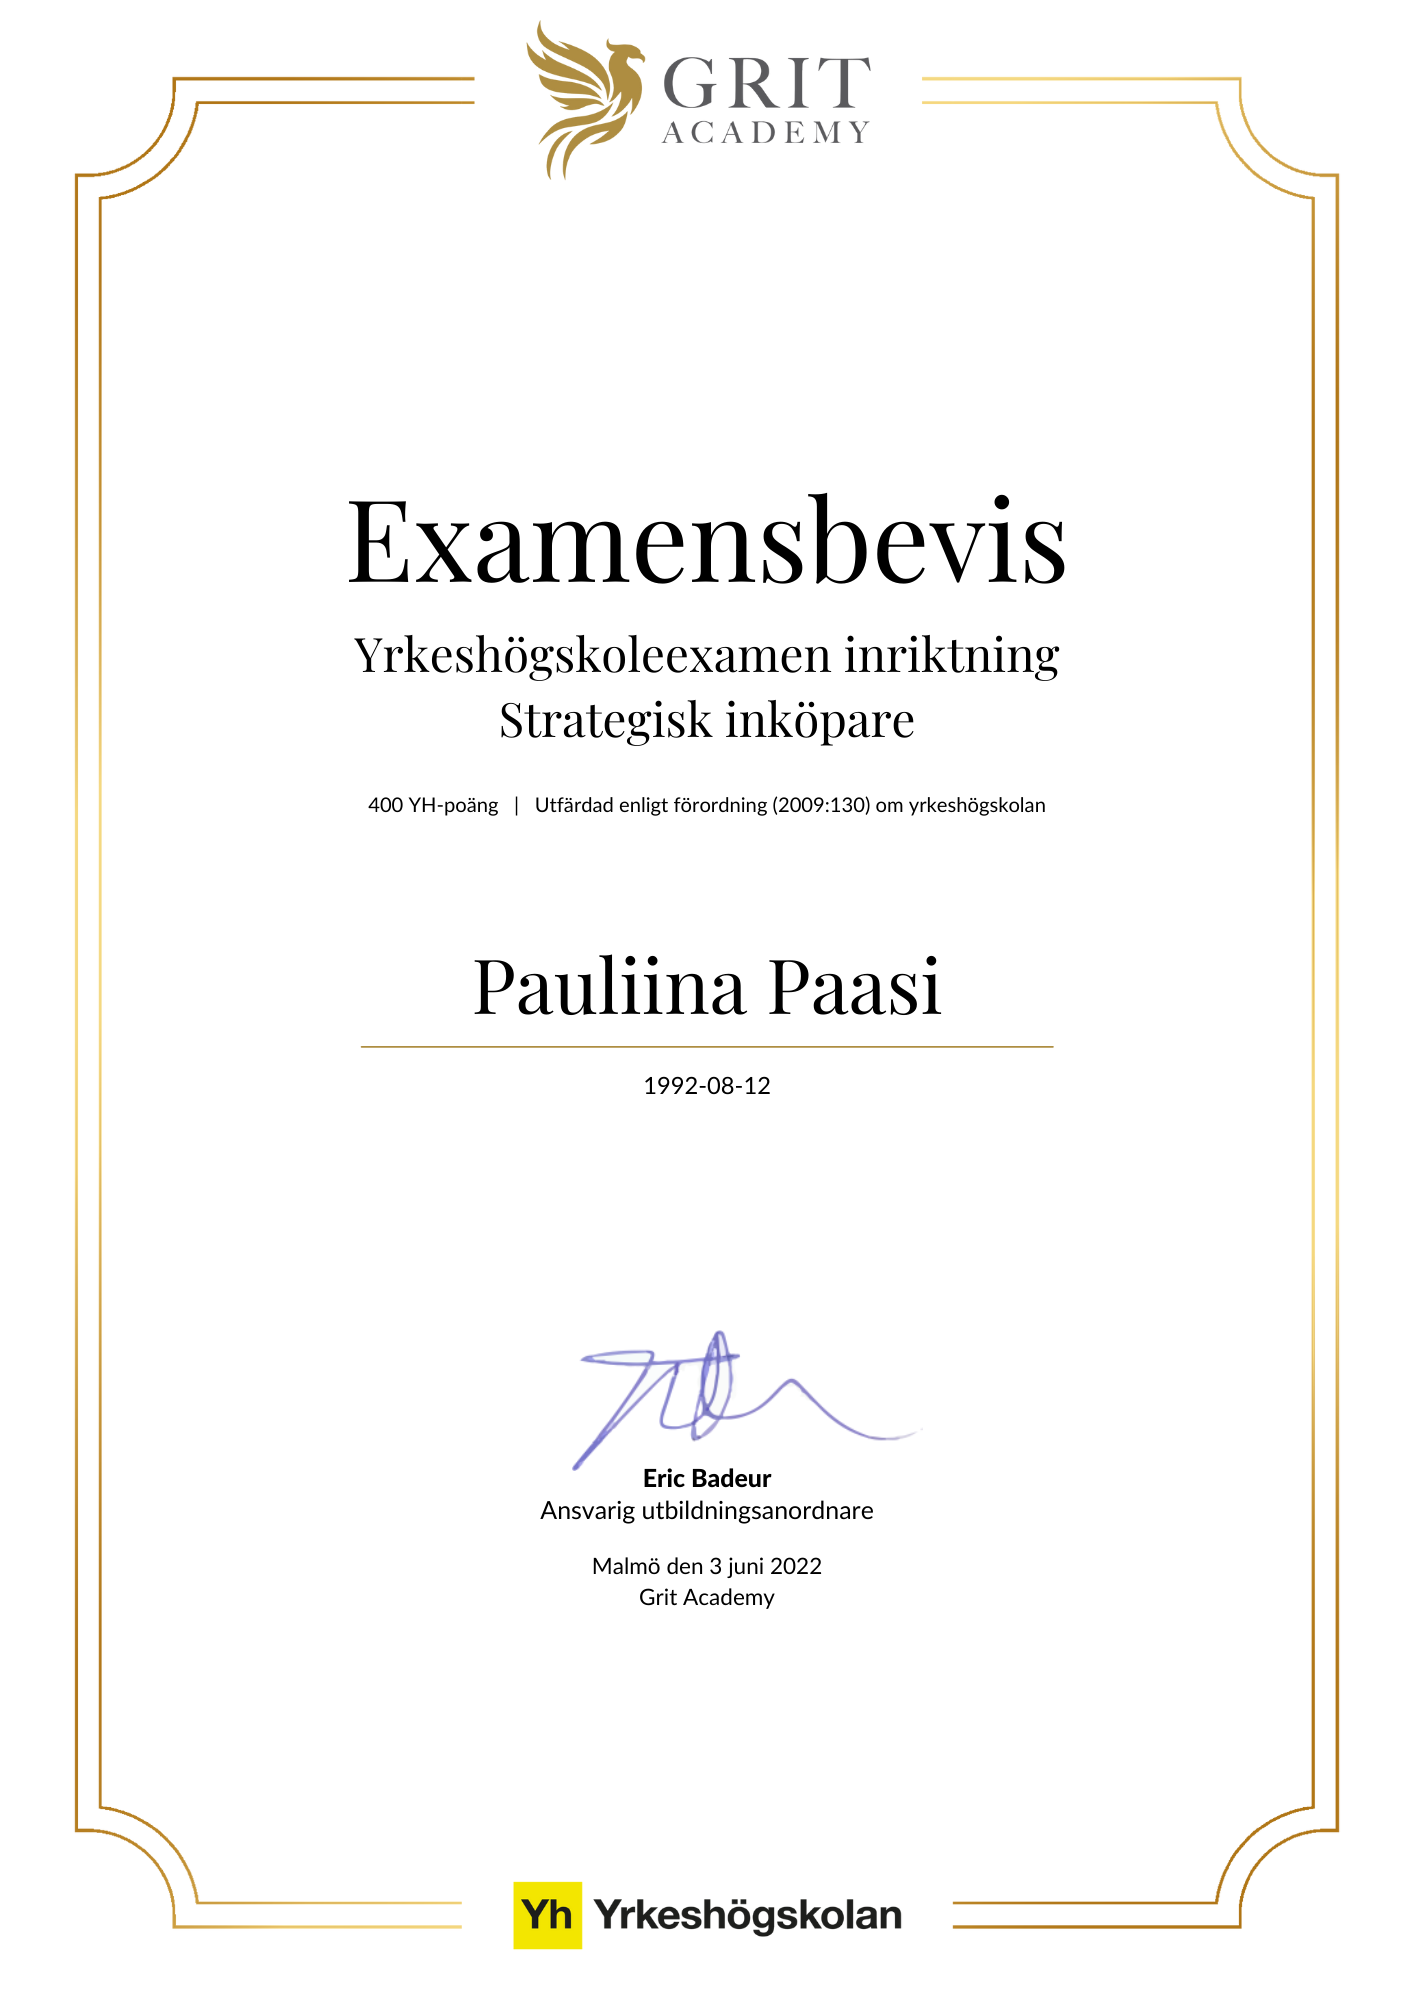 Examensbevis Pauliina Paasi - 1